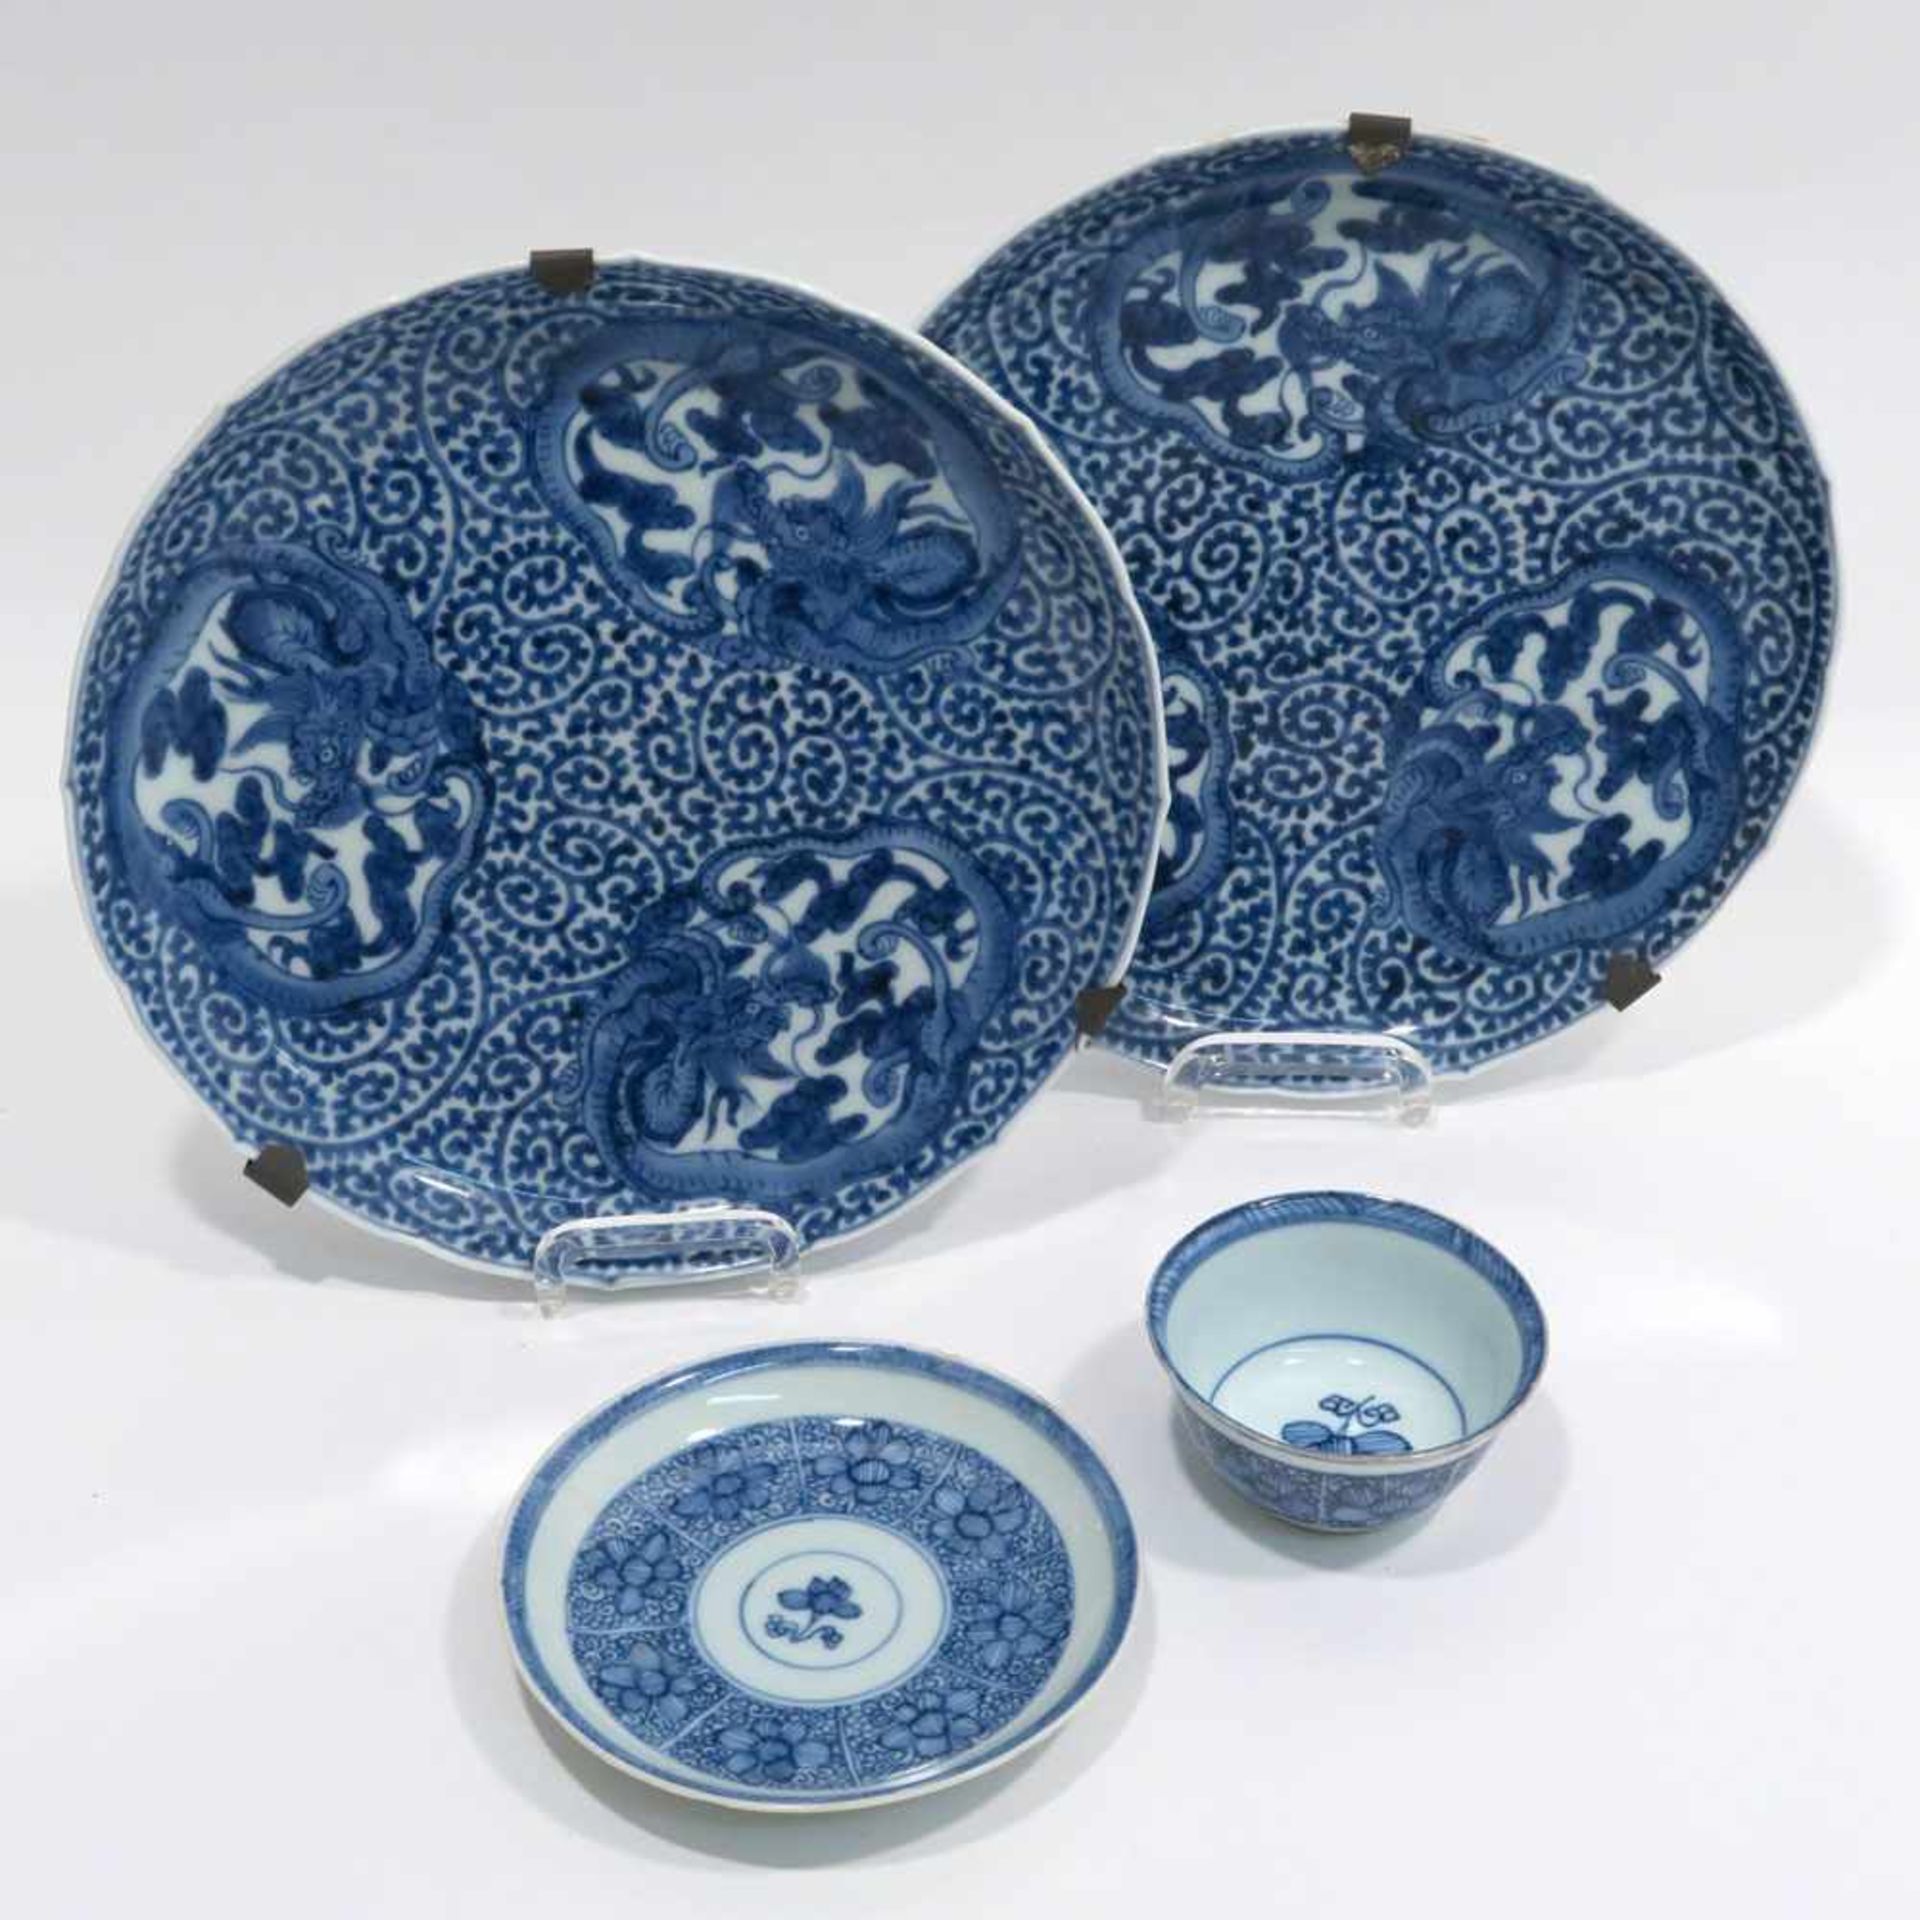 Ein Paar Teller / Koppchen mit UntertasseChina. Porzellan. Blaudekore: Spiralranken und drei